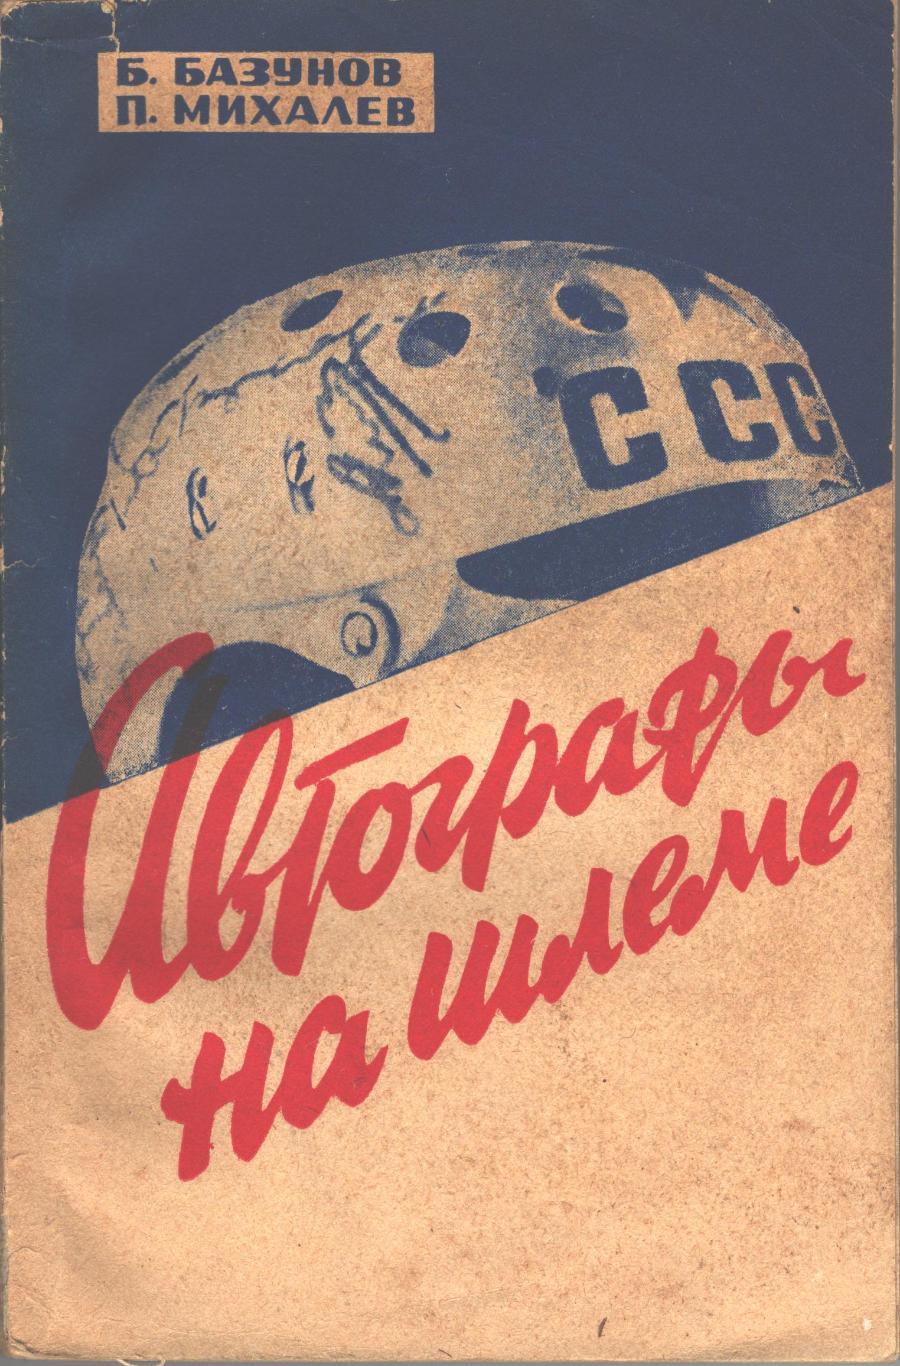 Б.Базунов, П. Михалёв. Автографы на шлеме. ФиС, 1967. 184 стр.